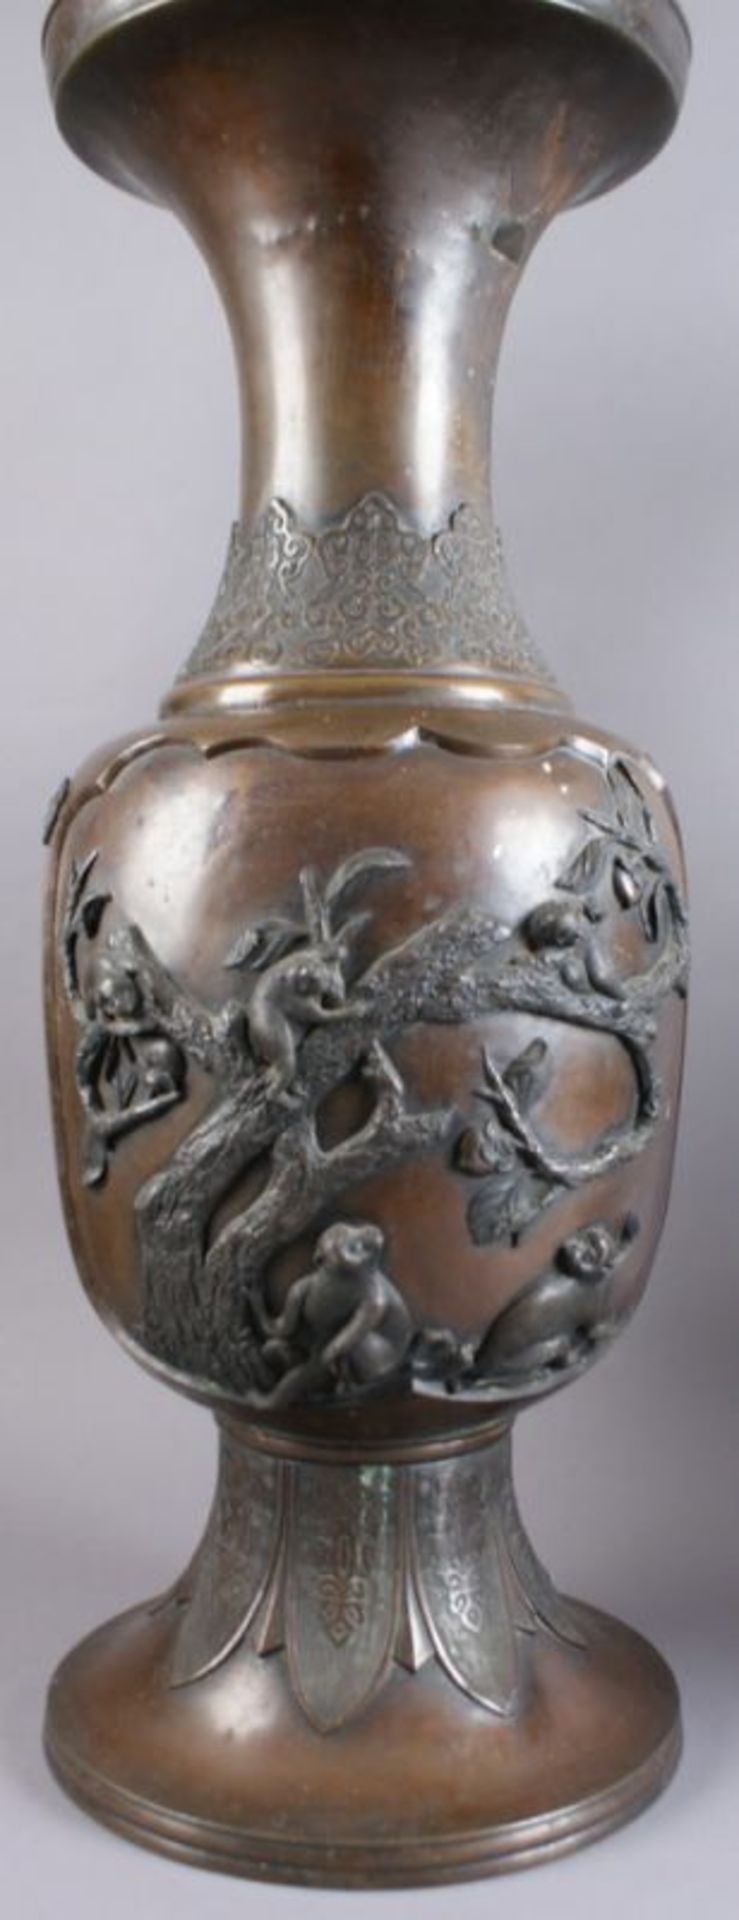 PAAR BRONZE VASEN Japan, 19. JH, zwei grosse Vasen mit Reliefdekor, Darstellung von spielenden Affen - Bild 7 aus 11